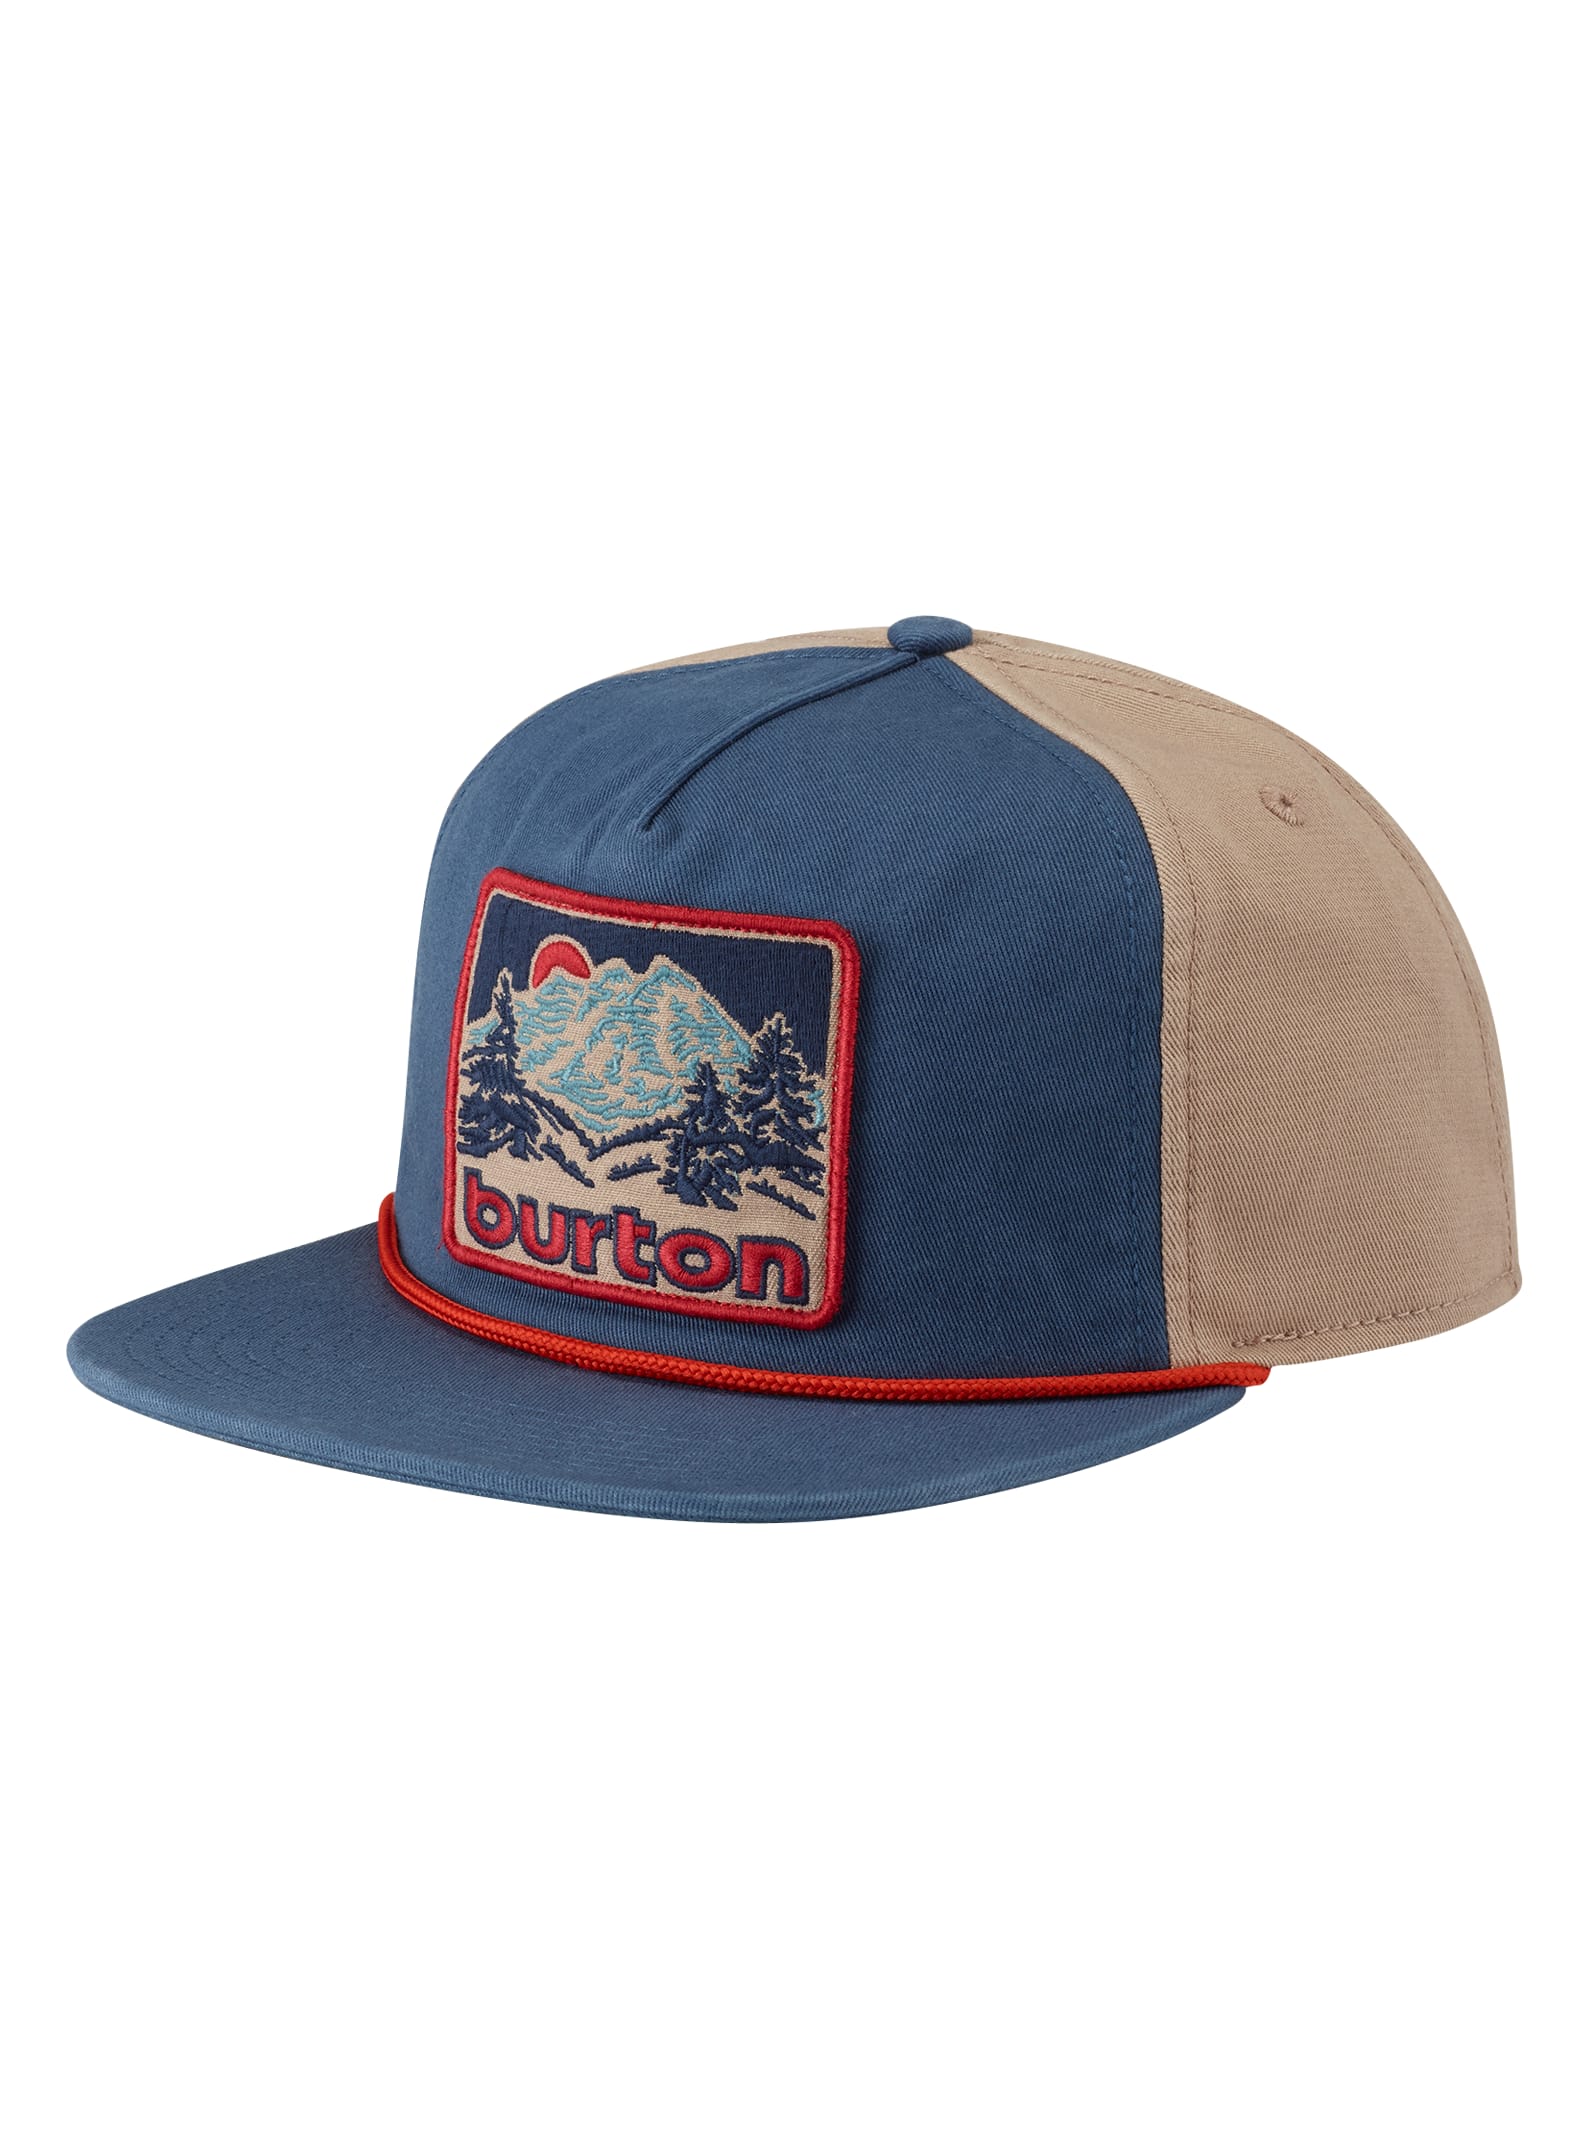 Burton Buckweed Snapback Hat | Burton.com Winter 2020 US